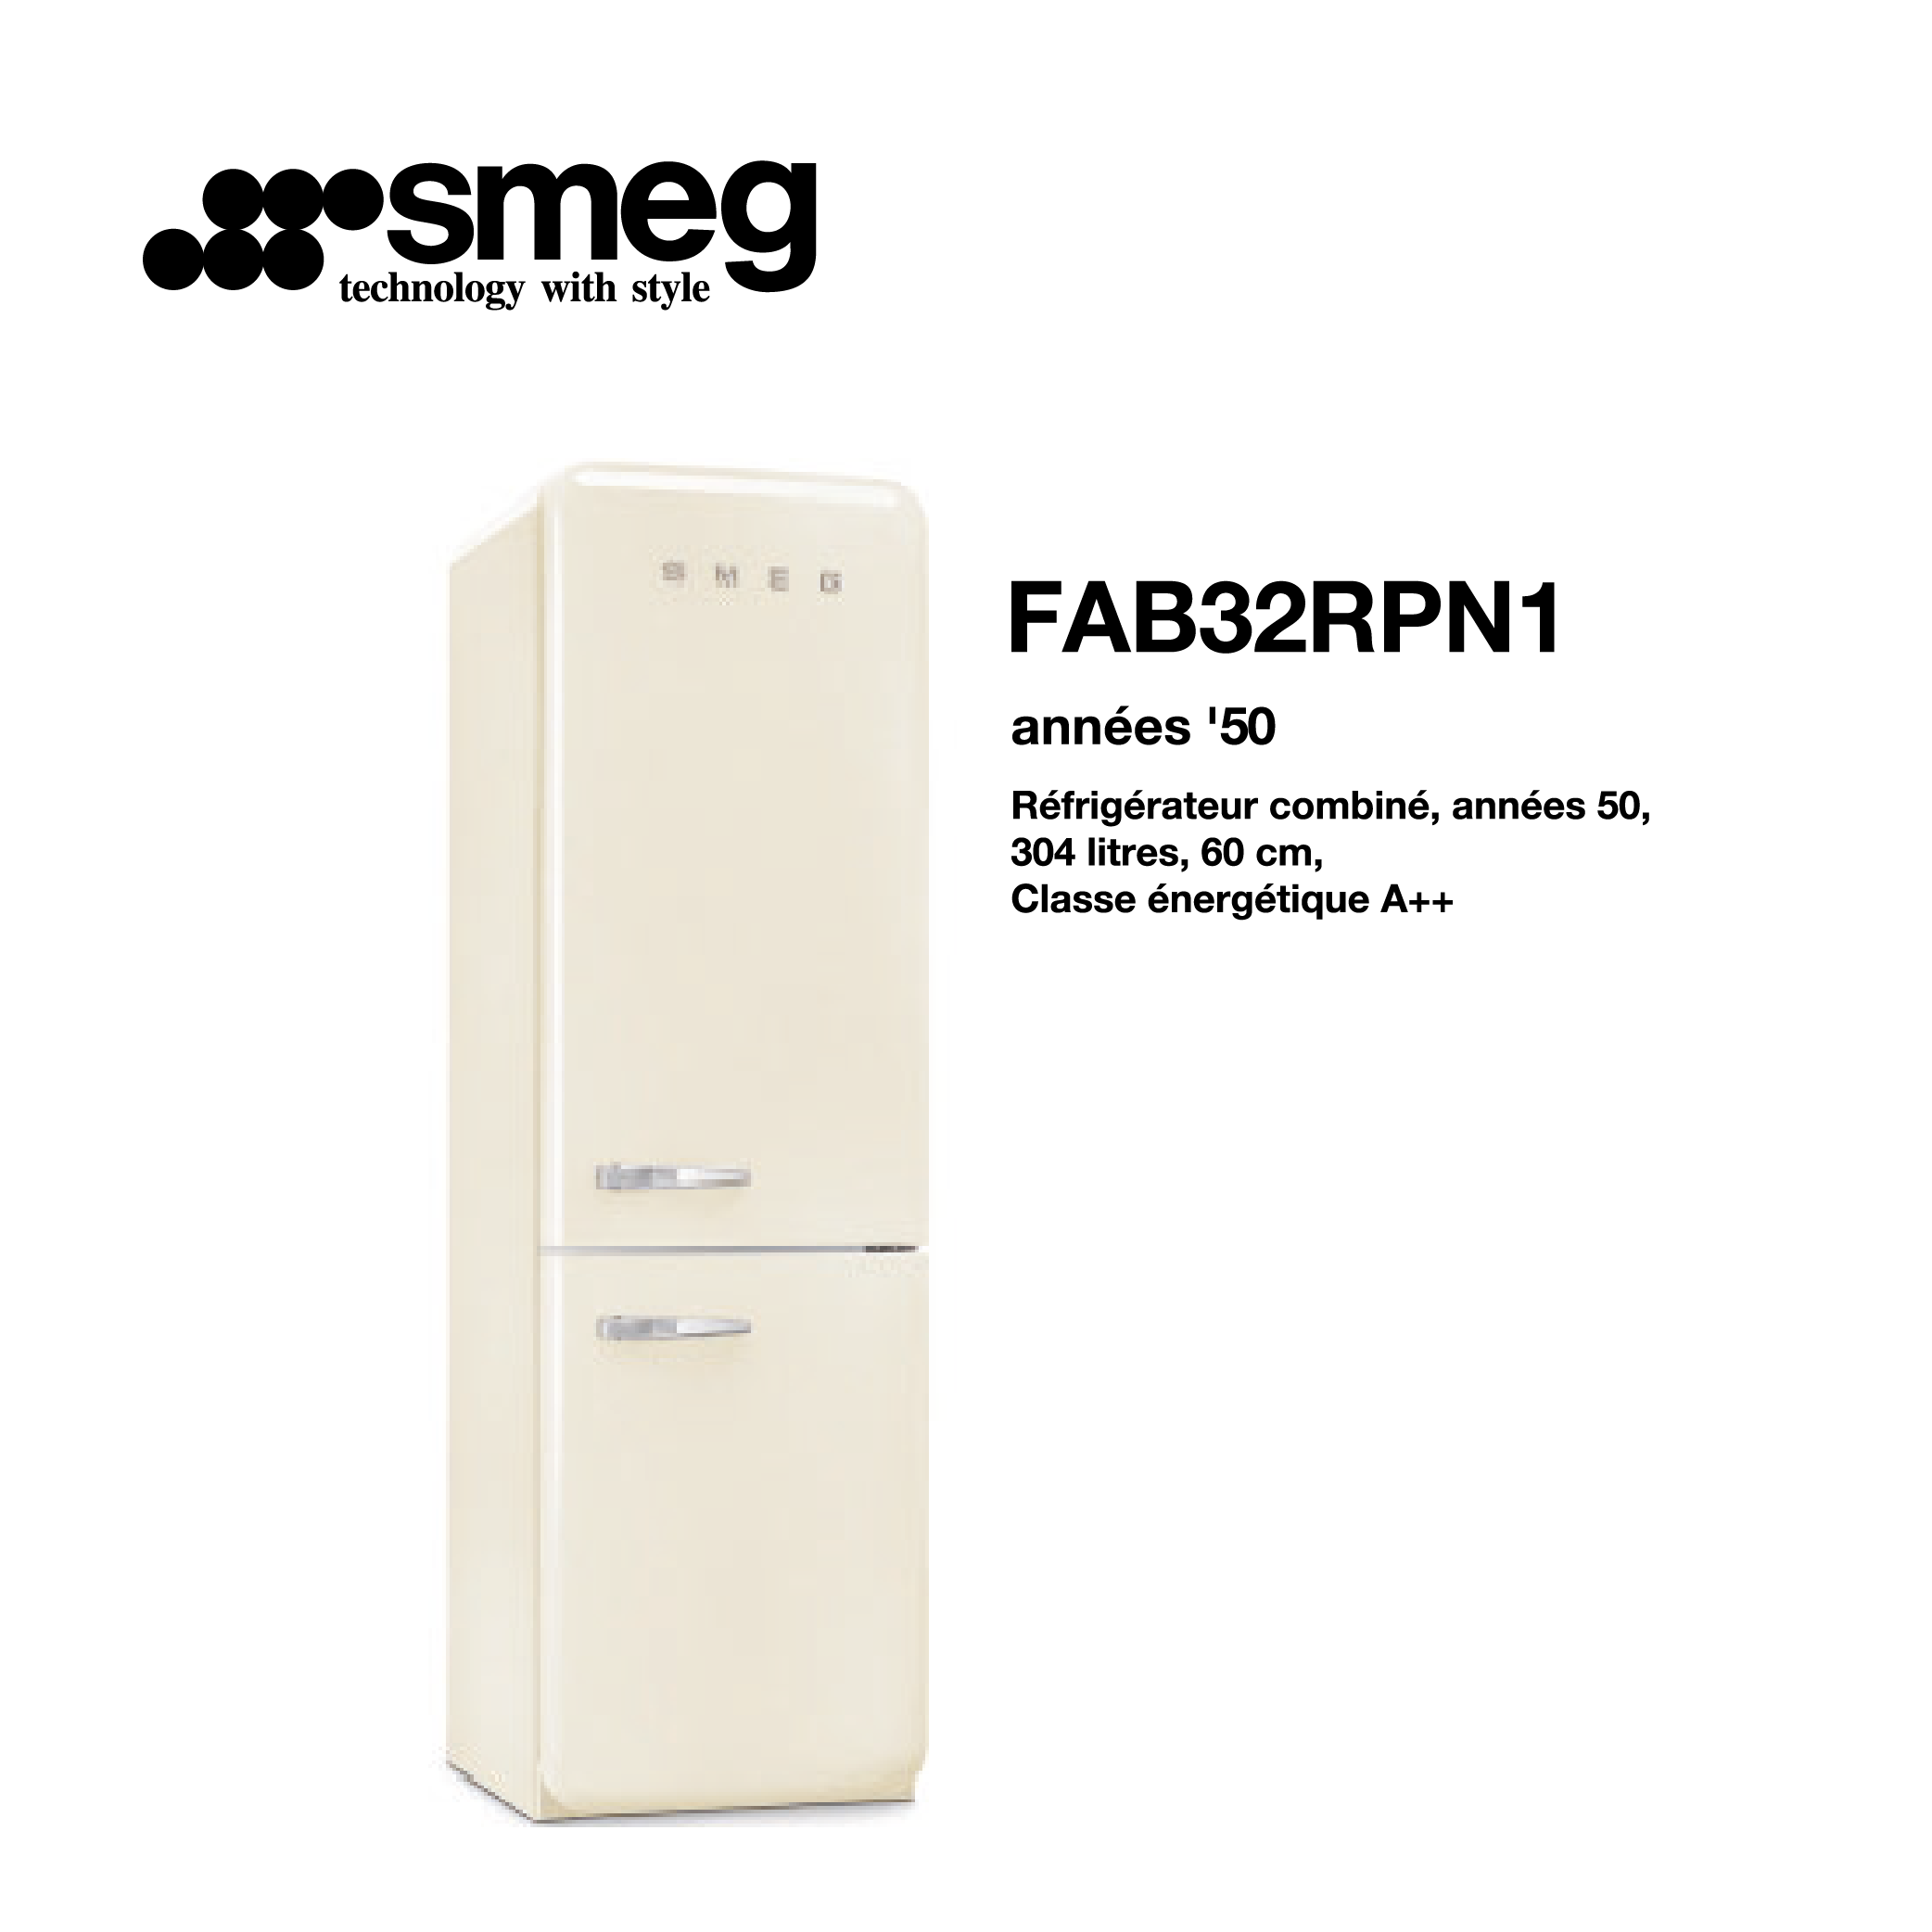 Réfrigérateur combiné smeg 304 litre – 60cm couleur Beige FAB32RPN1